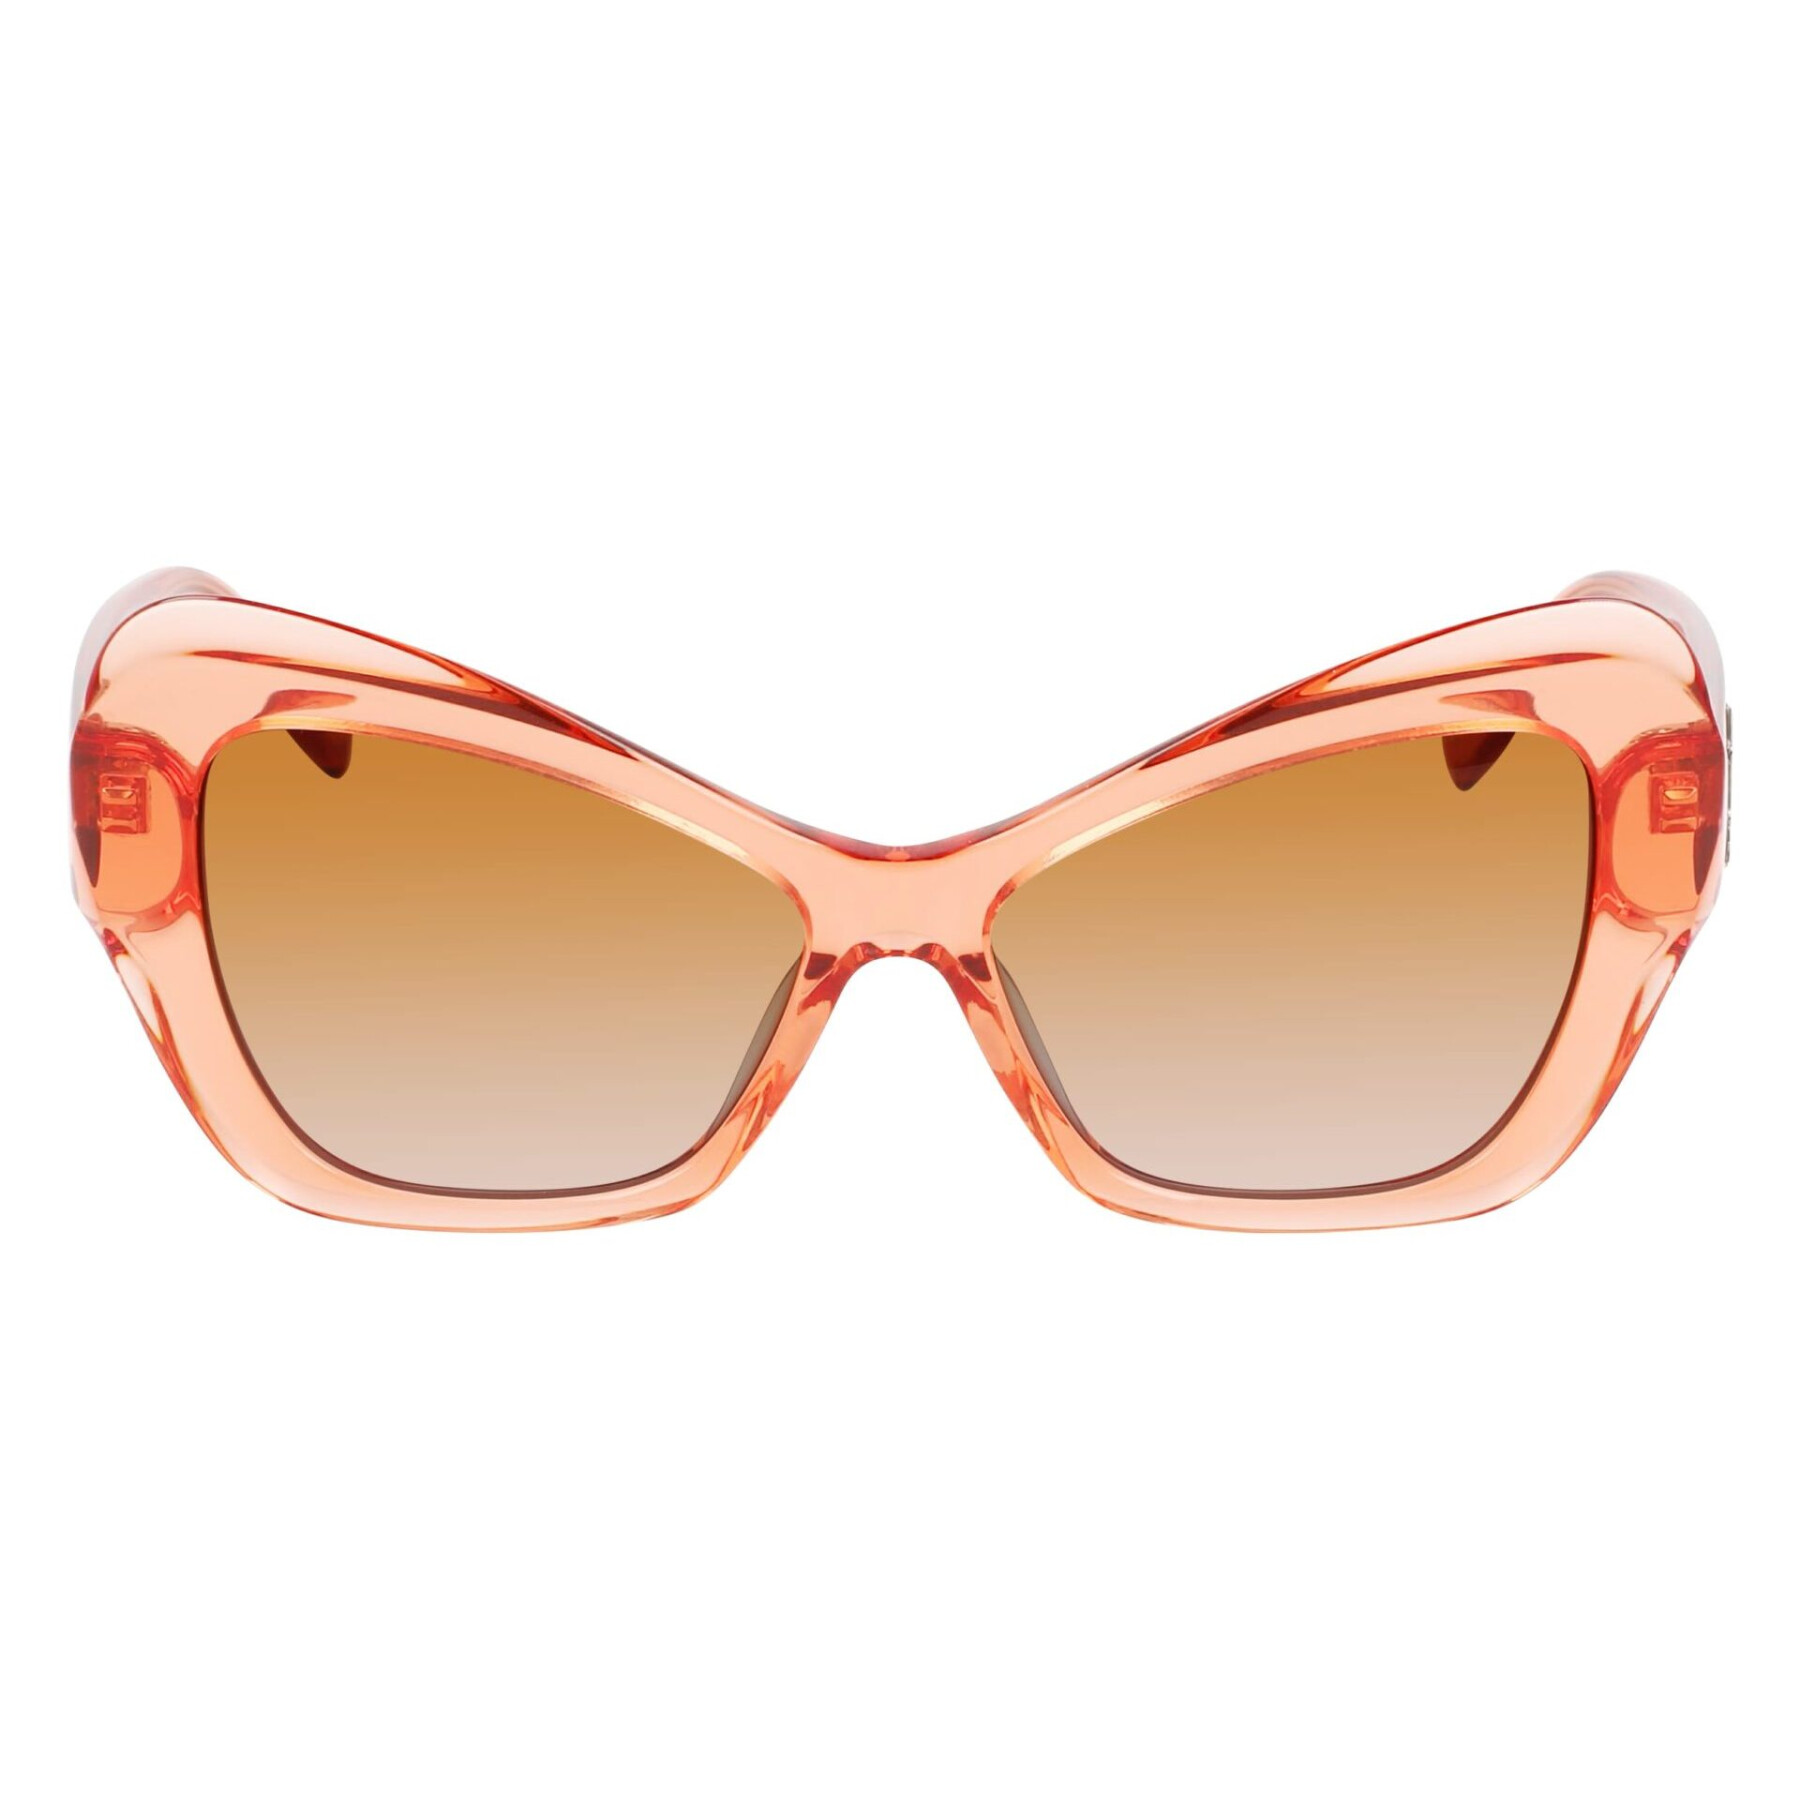 Women's sunglasses Karl Lagerfeld KL6076S800